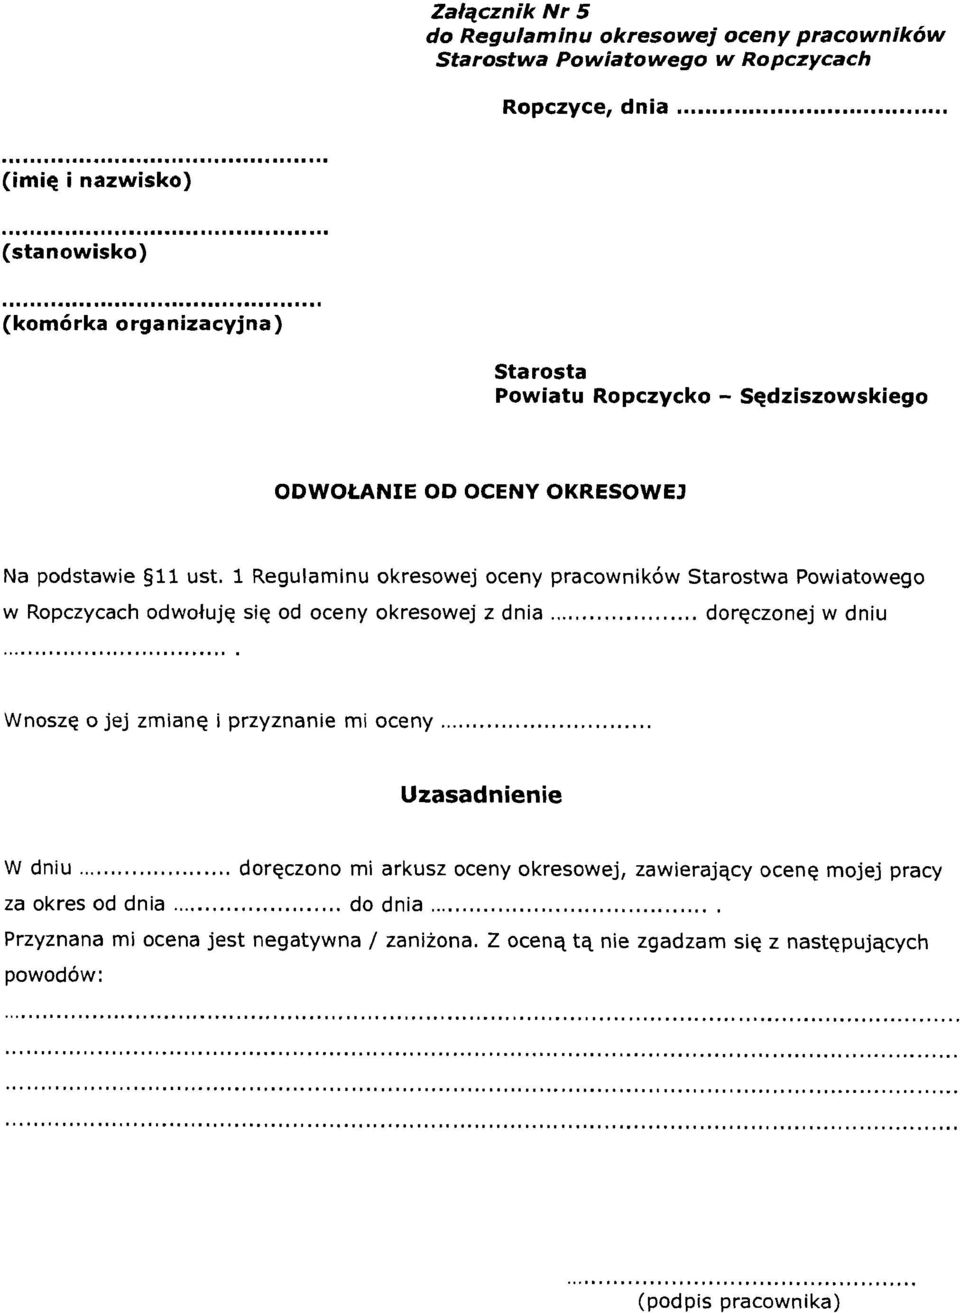 1 Regulaminu okresowej oceny pracownikow Starostwa Powiatowego w Ropczycach odwolujq siq od oceny okresowej z dnia.